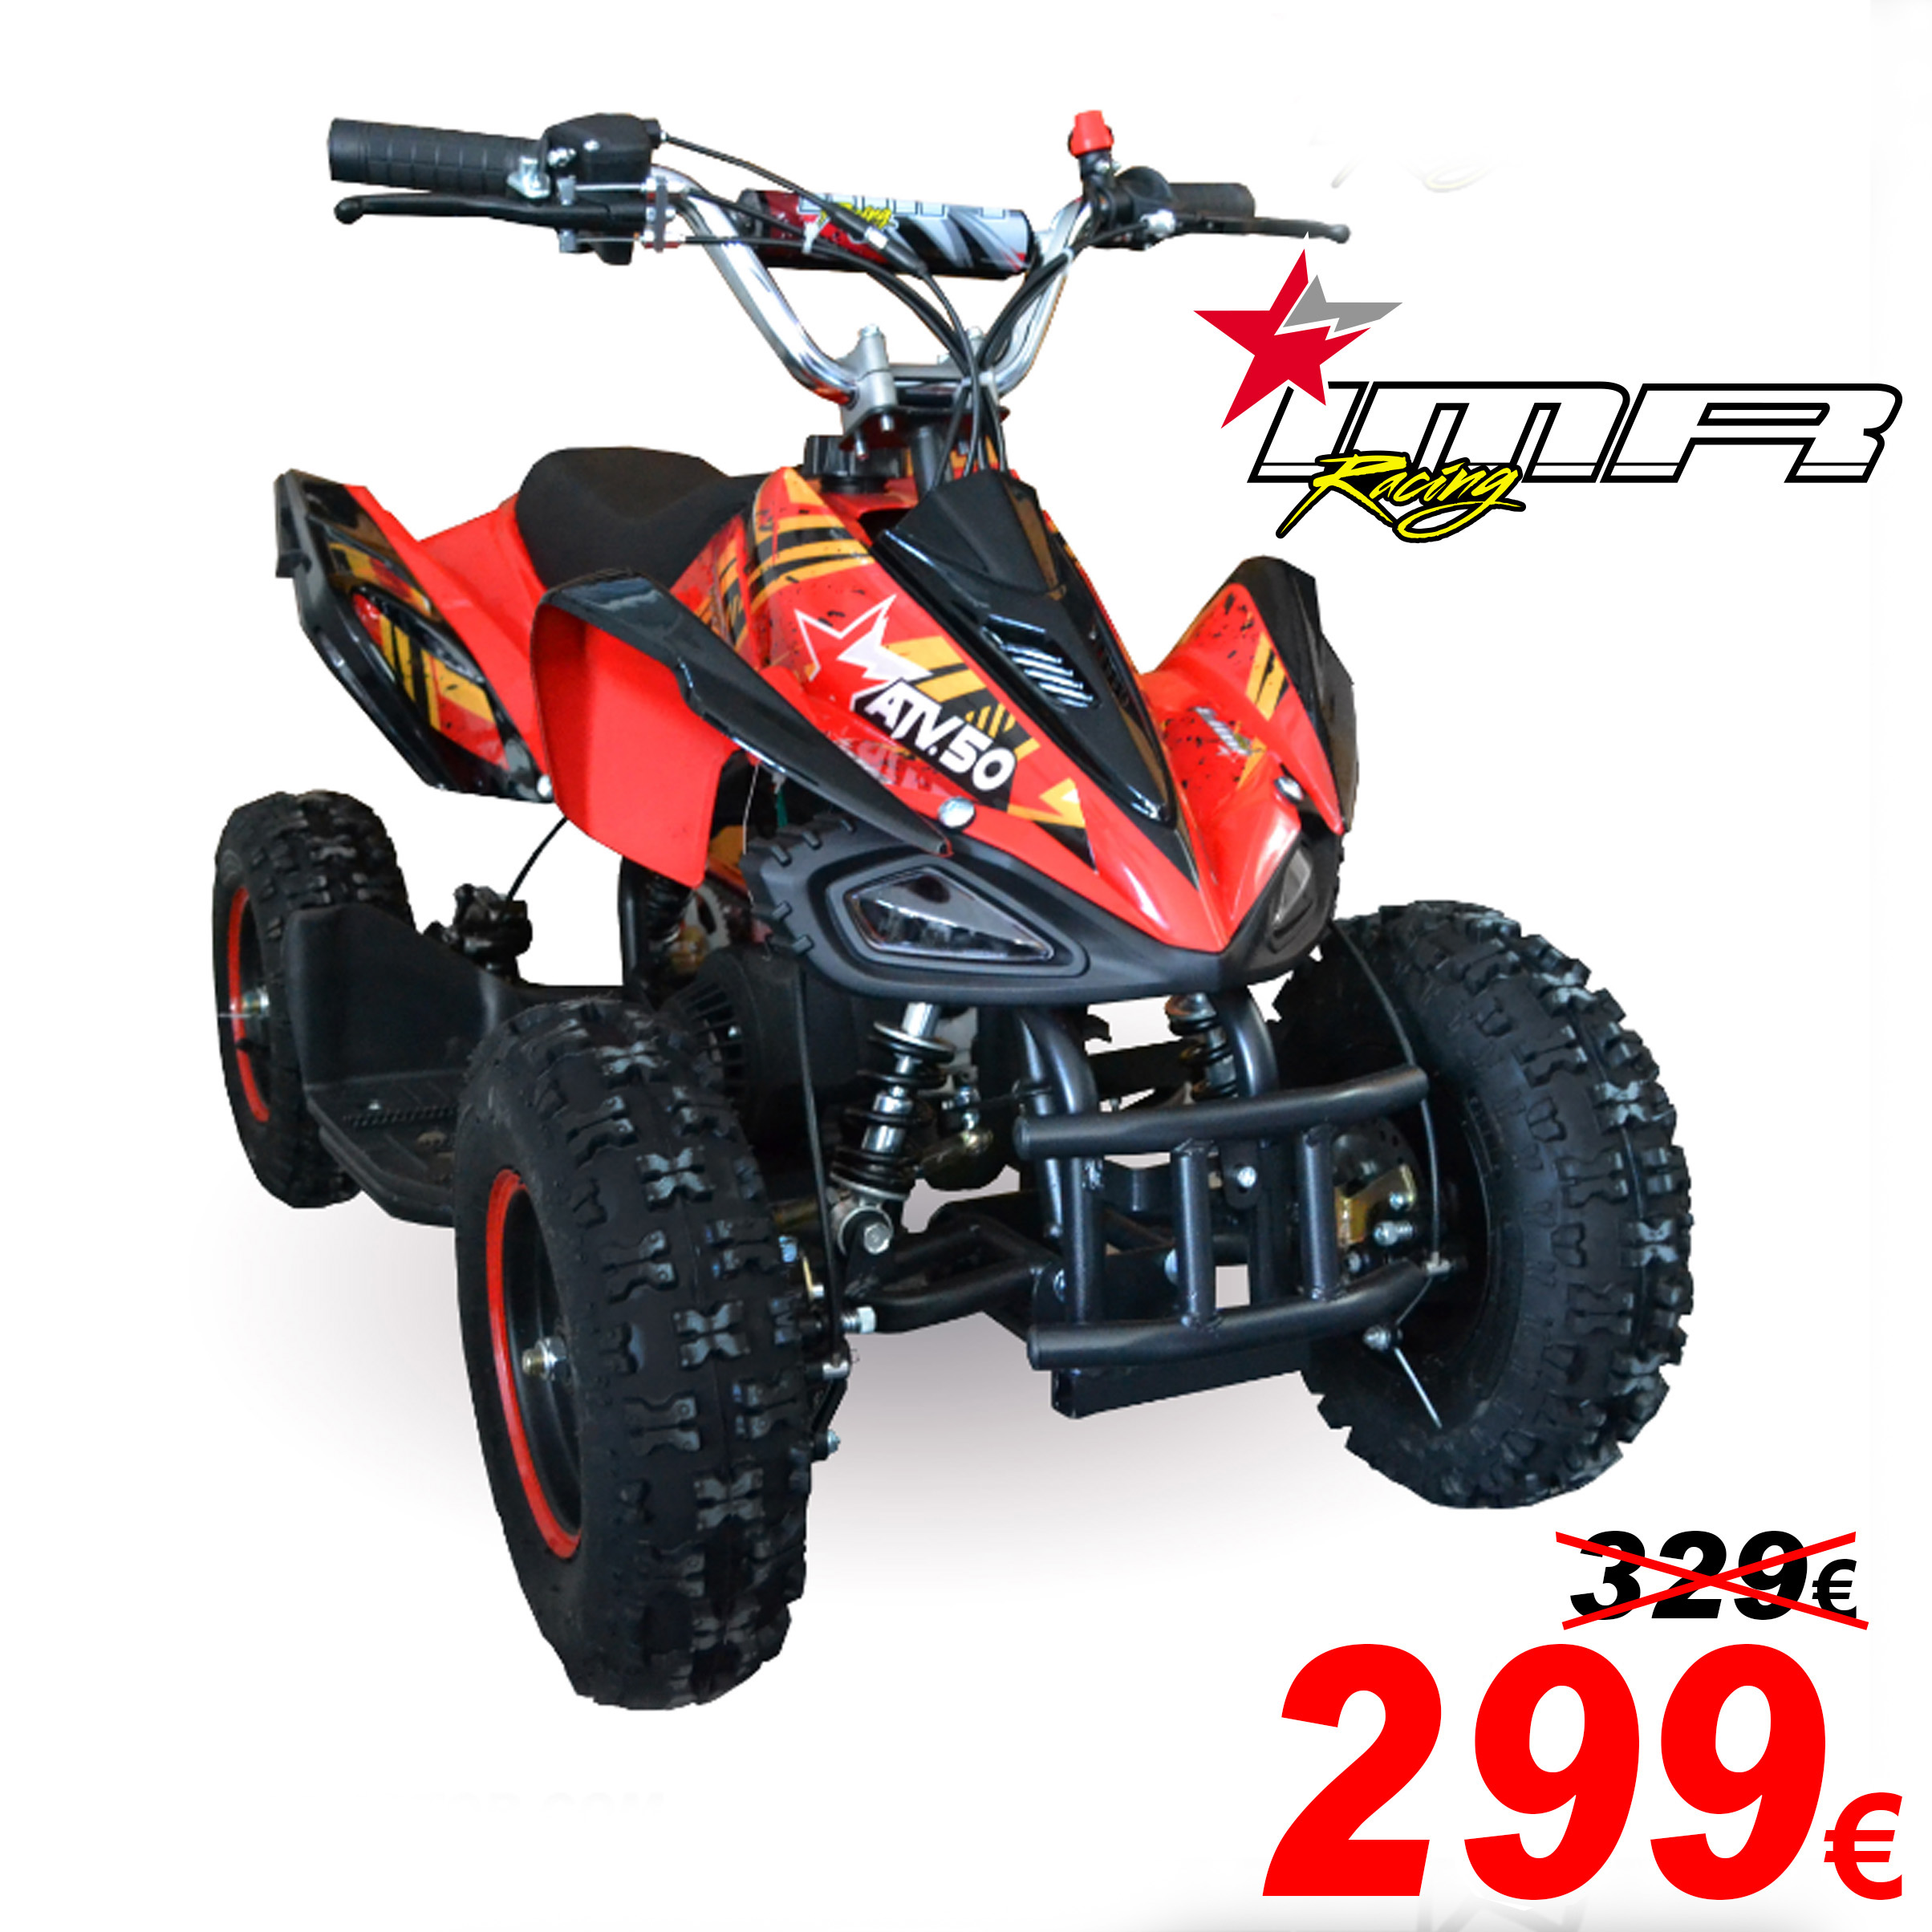 Mini-Quad - 50cc - €529.99 